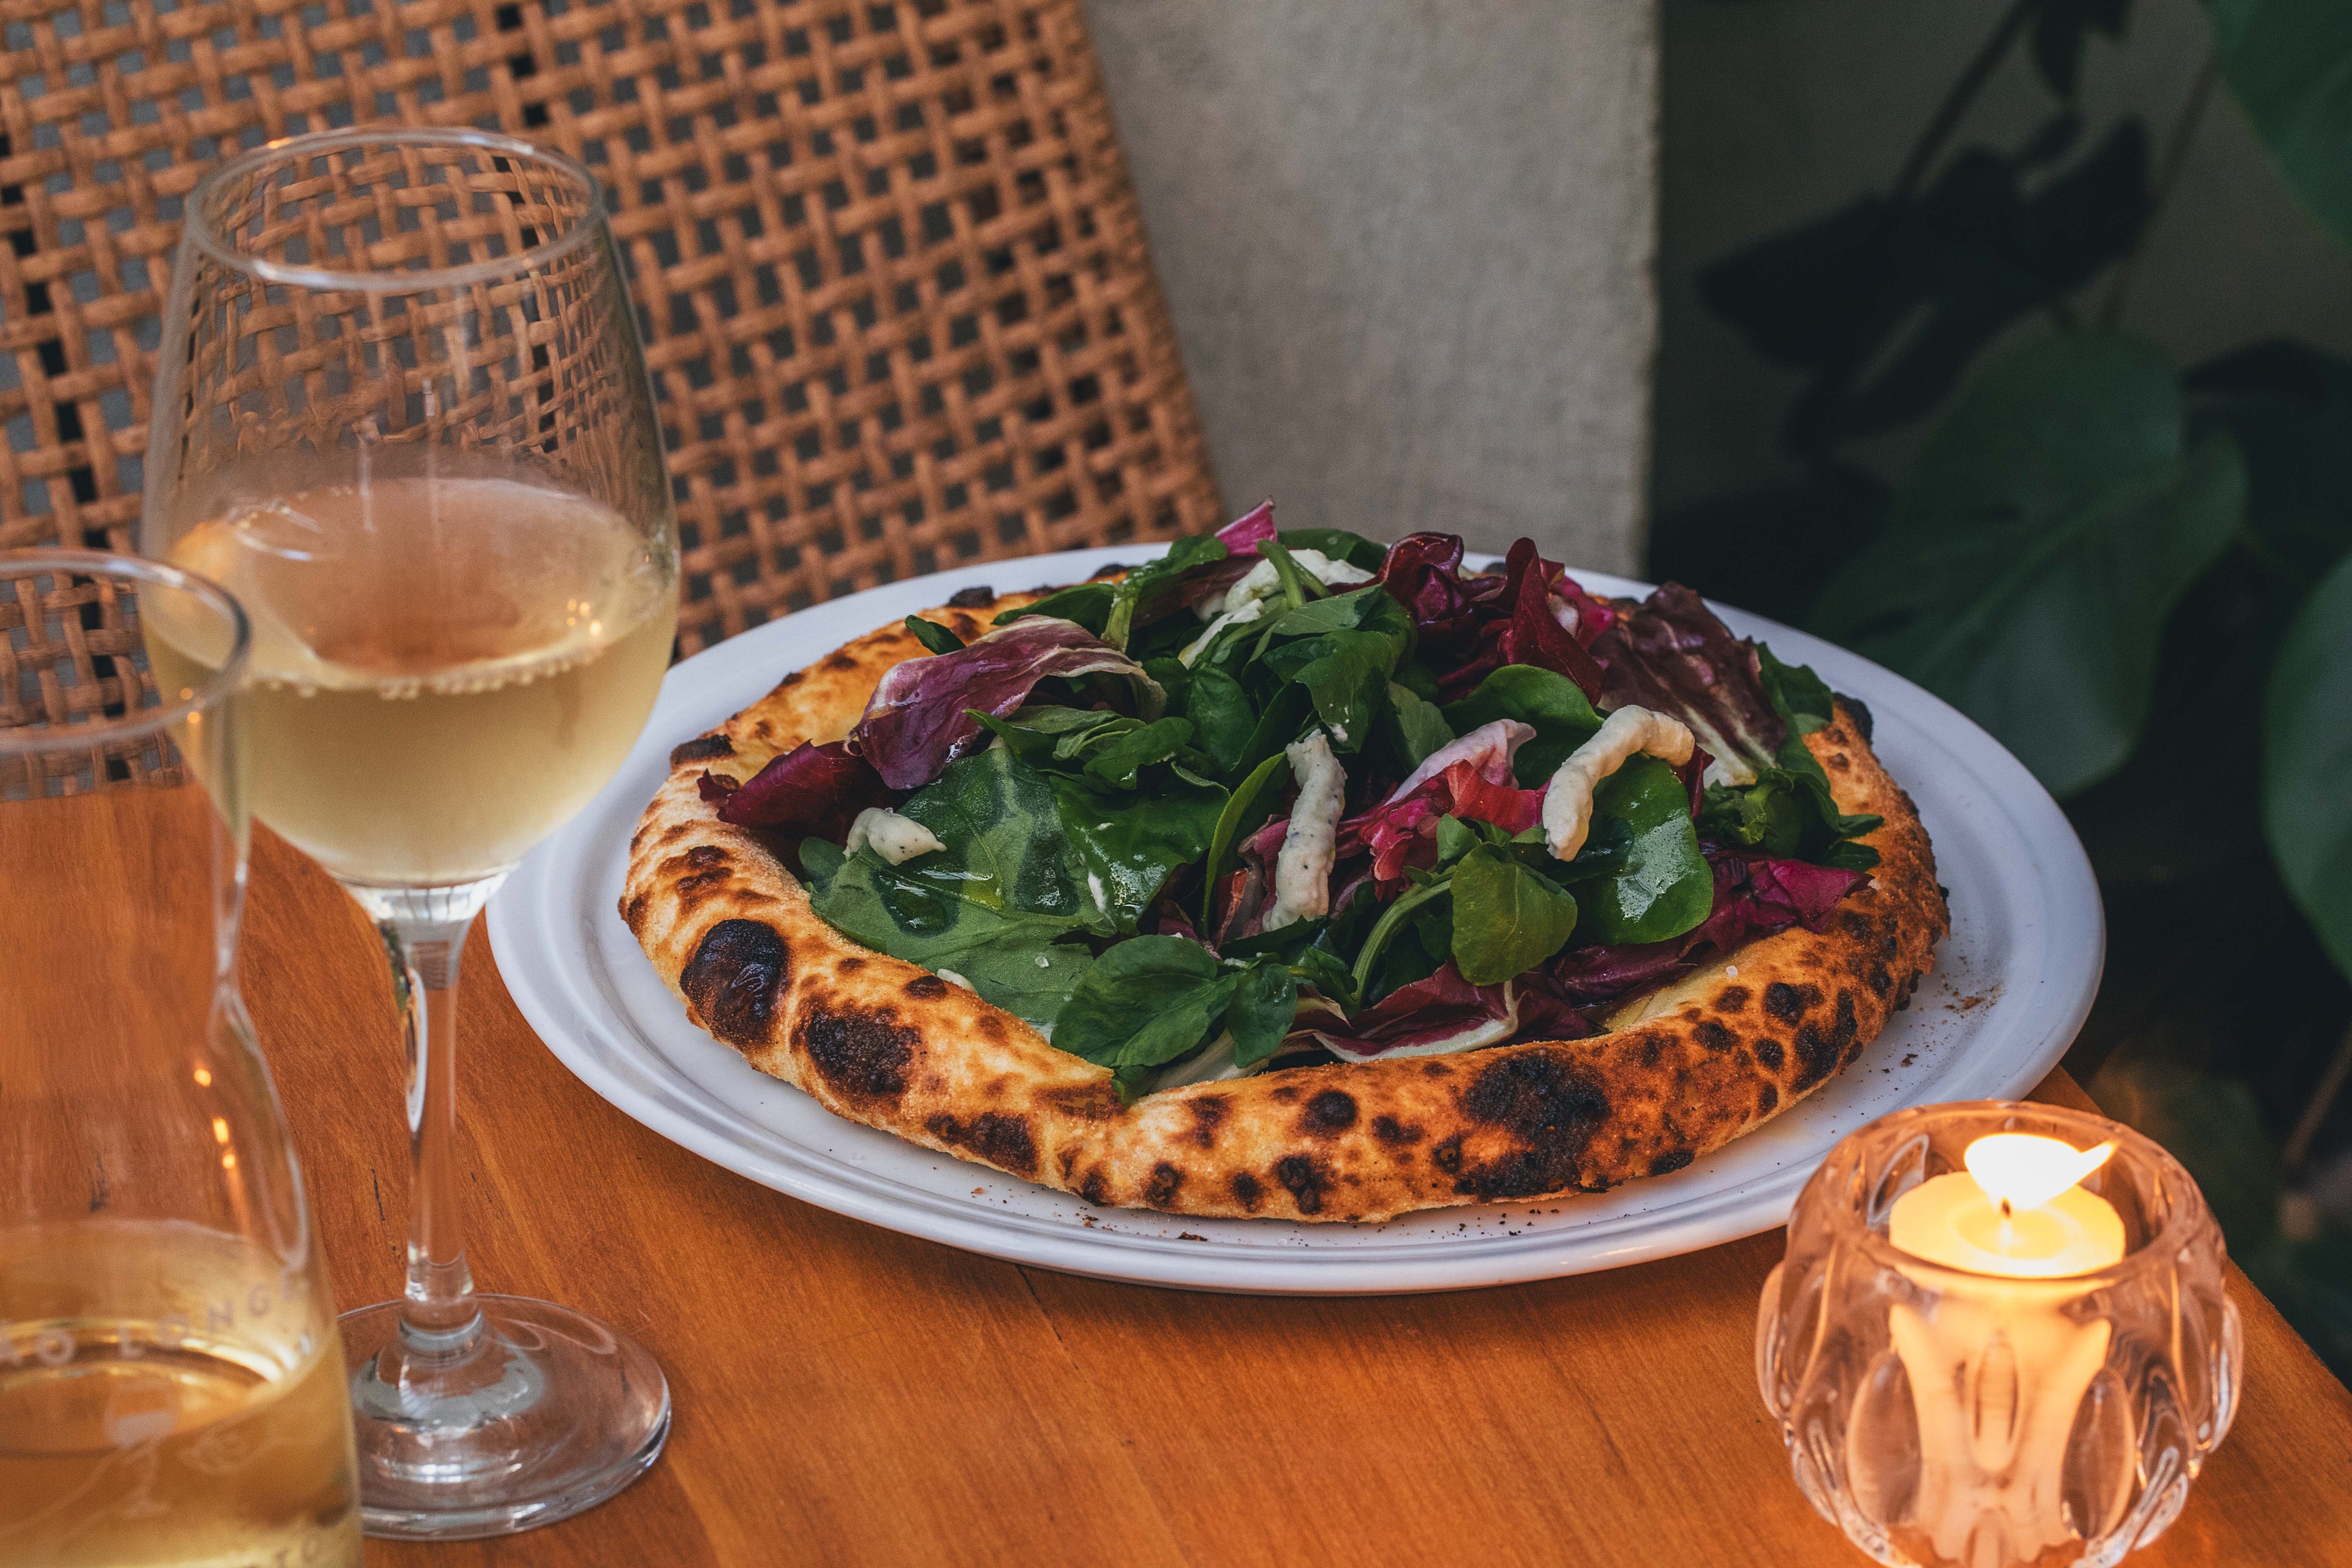 Dia Mundial da Pizza: conheça algumas das melhores pizzarias da capital  mineira, preços e sabores - Rádio Itatiaia